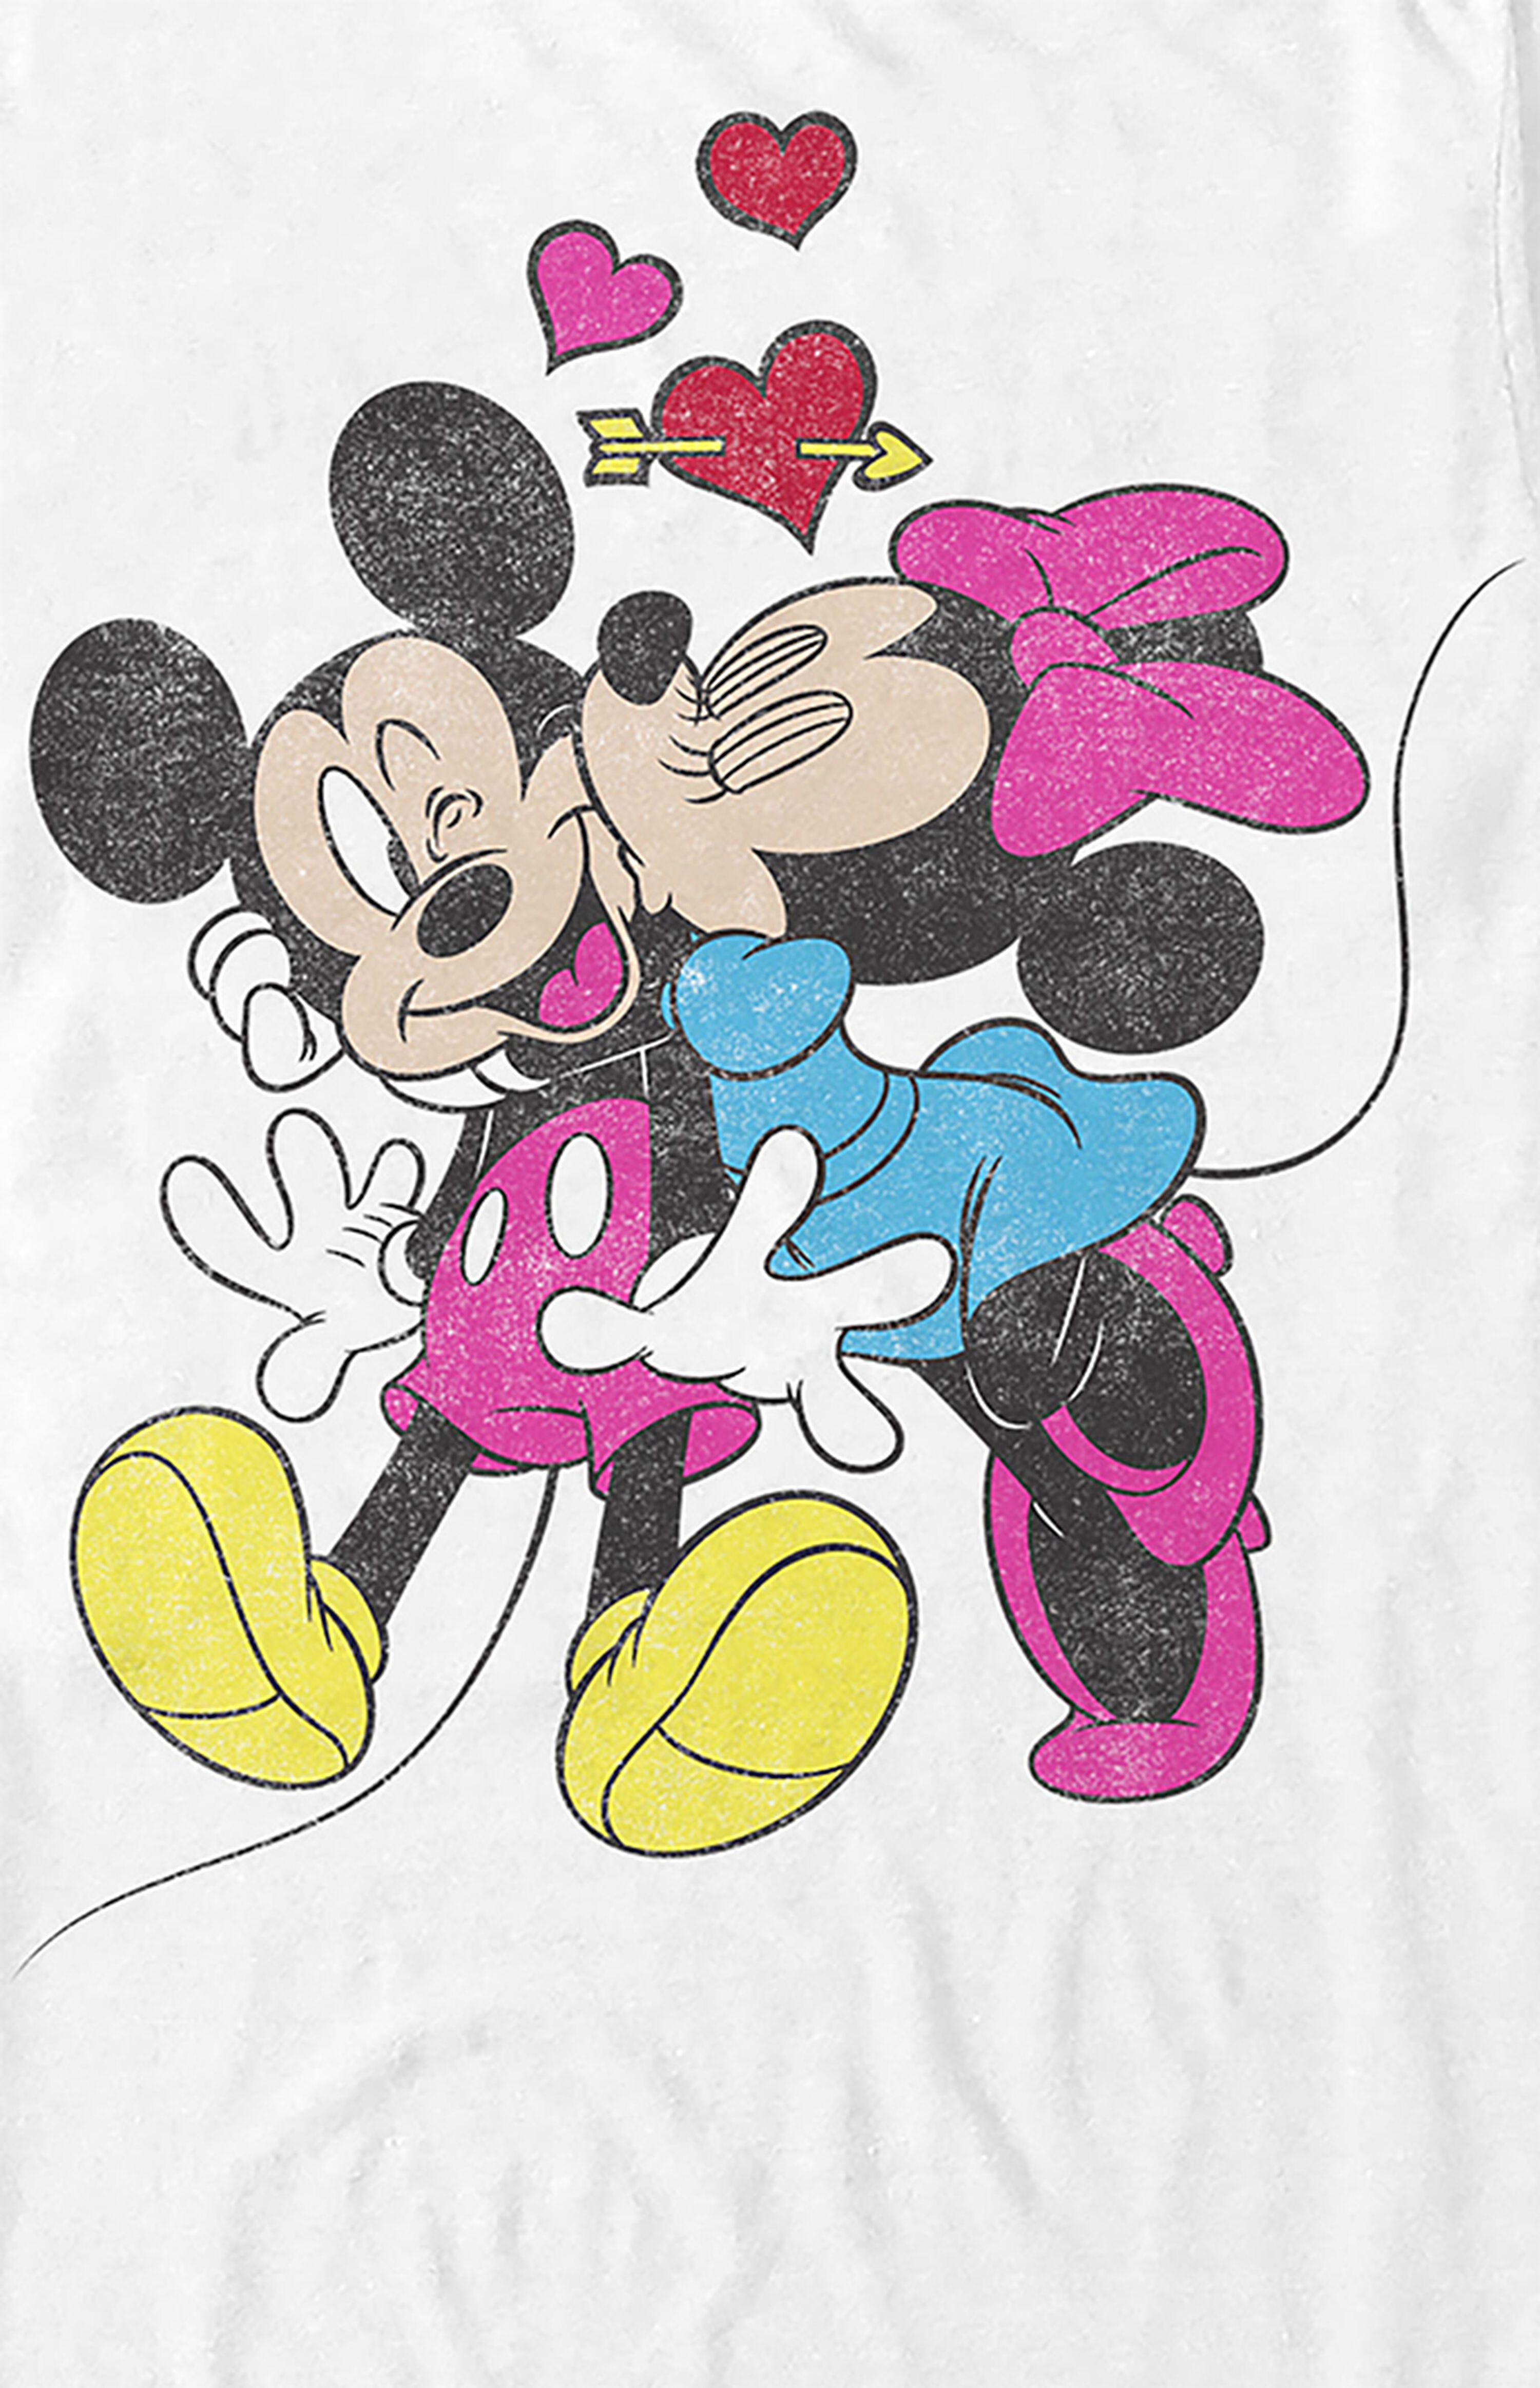 Disney Mickey & Minnie Kiss T-Shirt | PacSun | PacSun